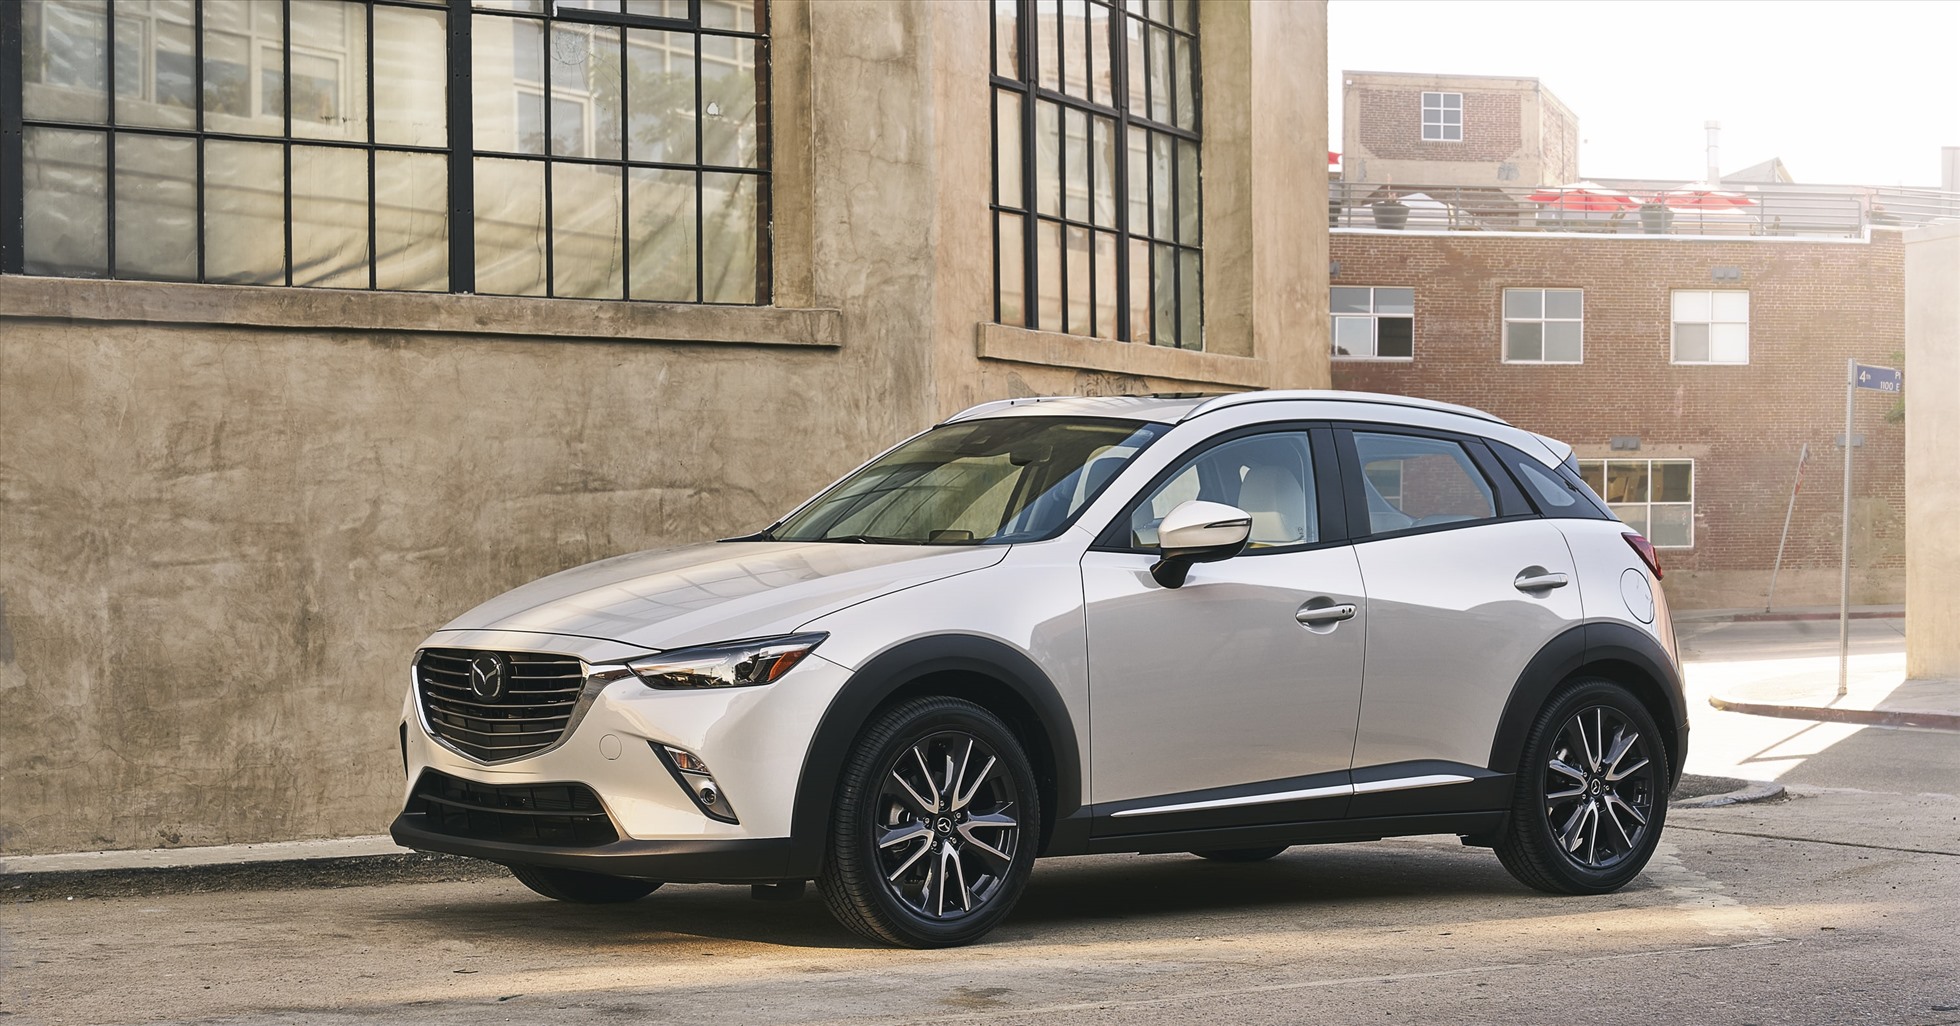 Dù nhận được ưu đãi giảm giá từ hãng song doanh số các mẫu xe gầm cao của Mazda vẫn chưa có sự bứt phá. Ảnh: Mazda.